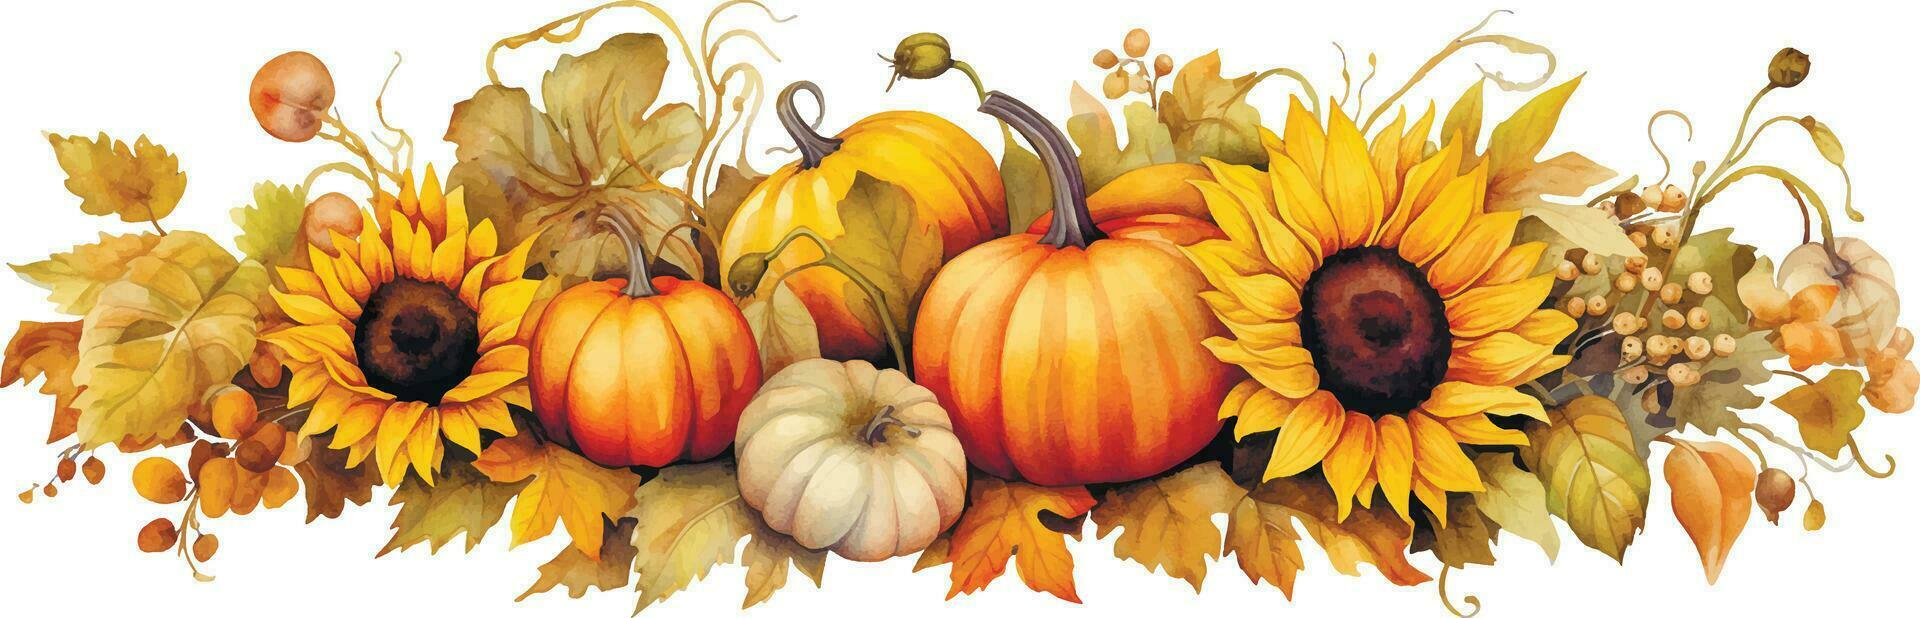 waterverf tekening. herfst samenstelling met oogst, met pompoenen en zonnebloem bloemen in wijnoogst stijl. dankzegging kaart decoratie, herfst, oogst festival vector